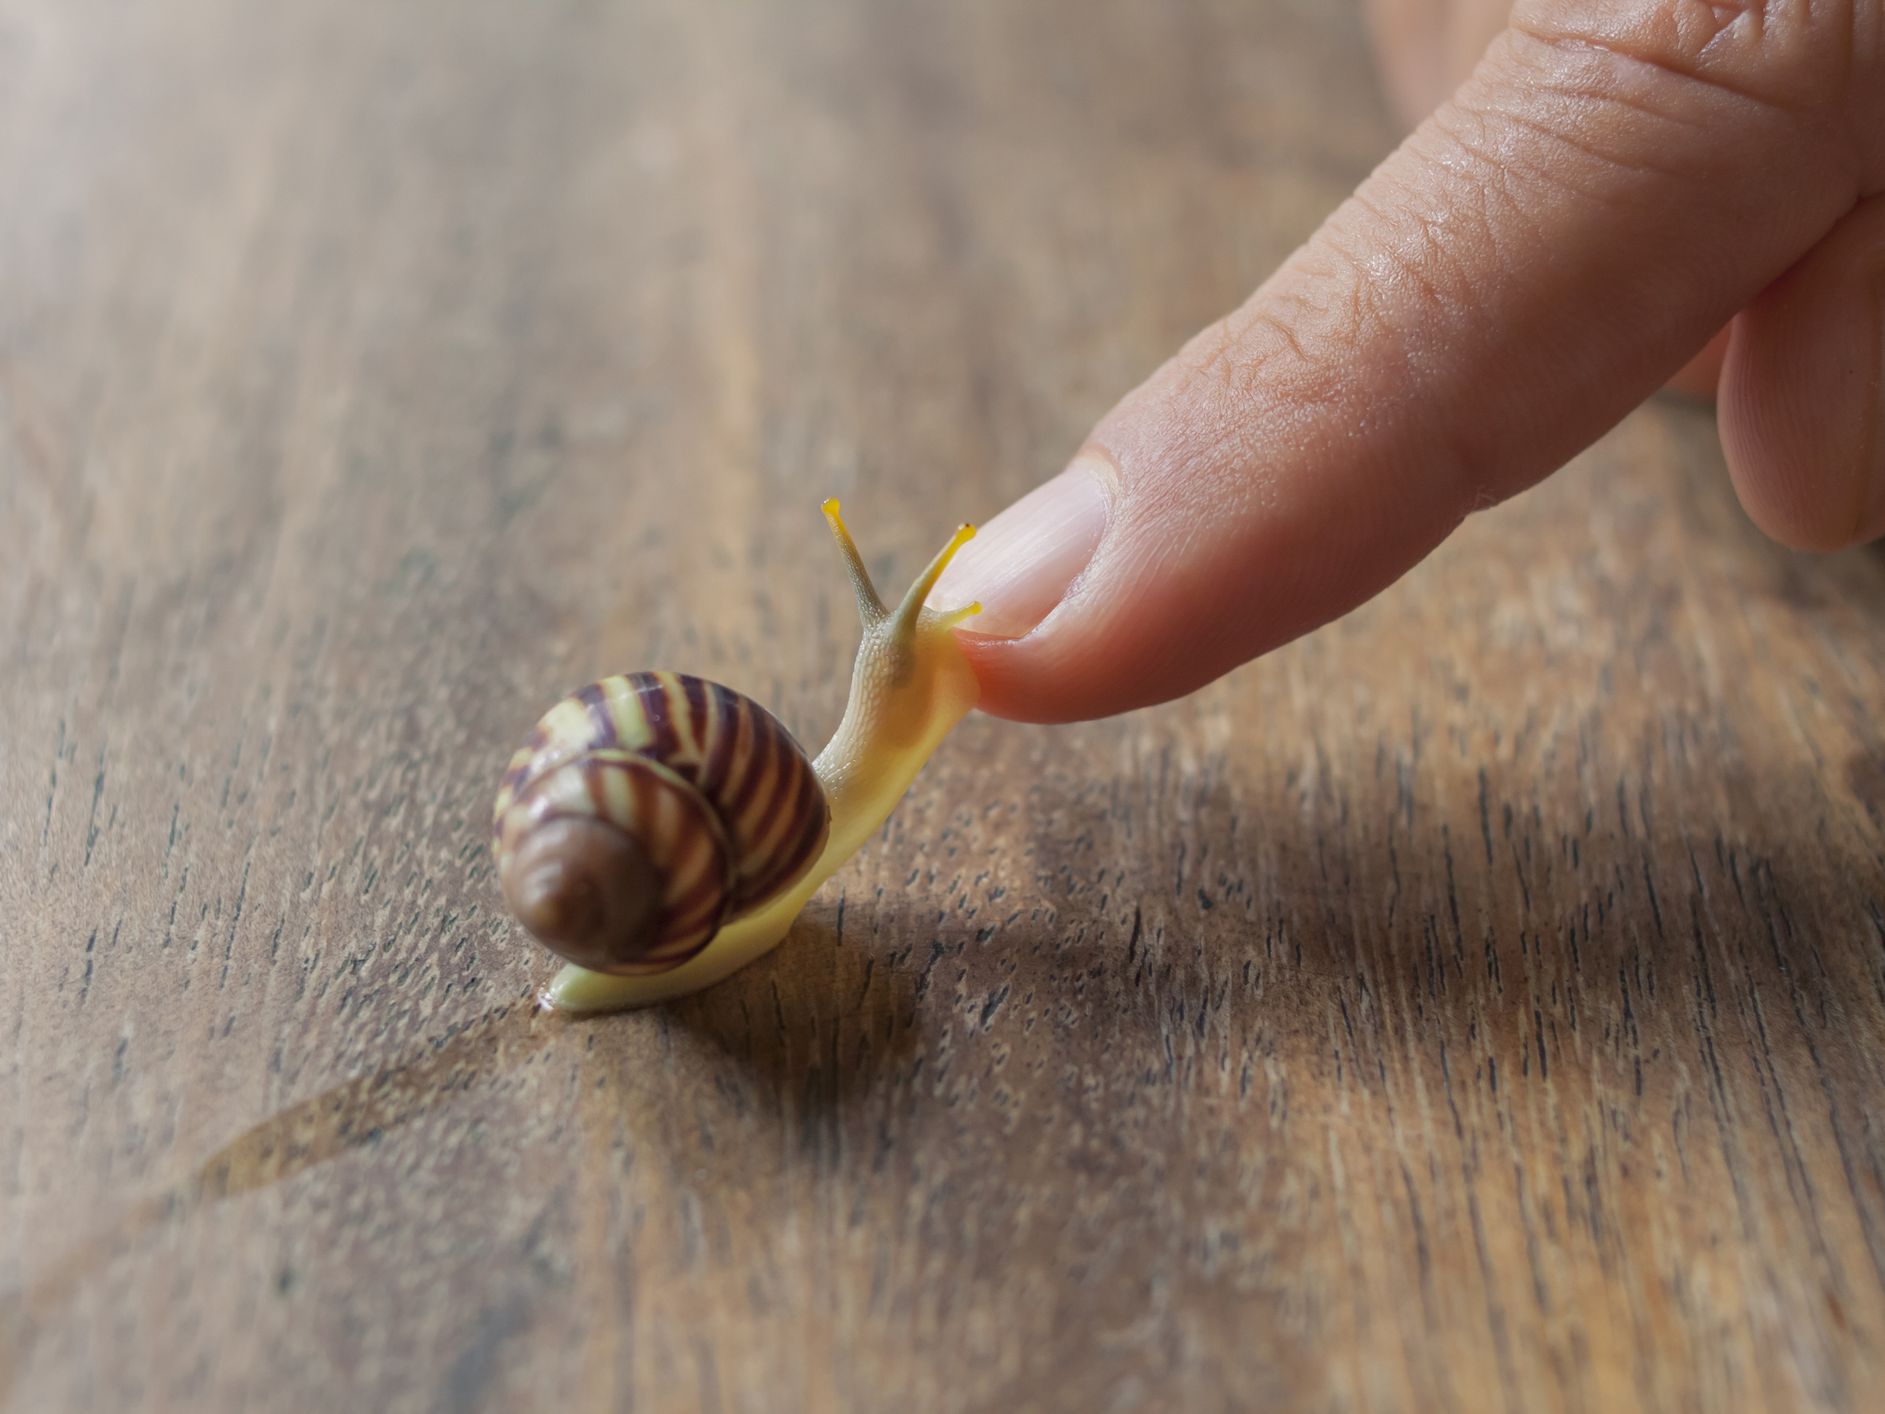 How long do pet snails live?